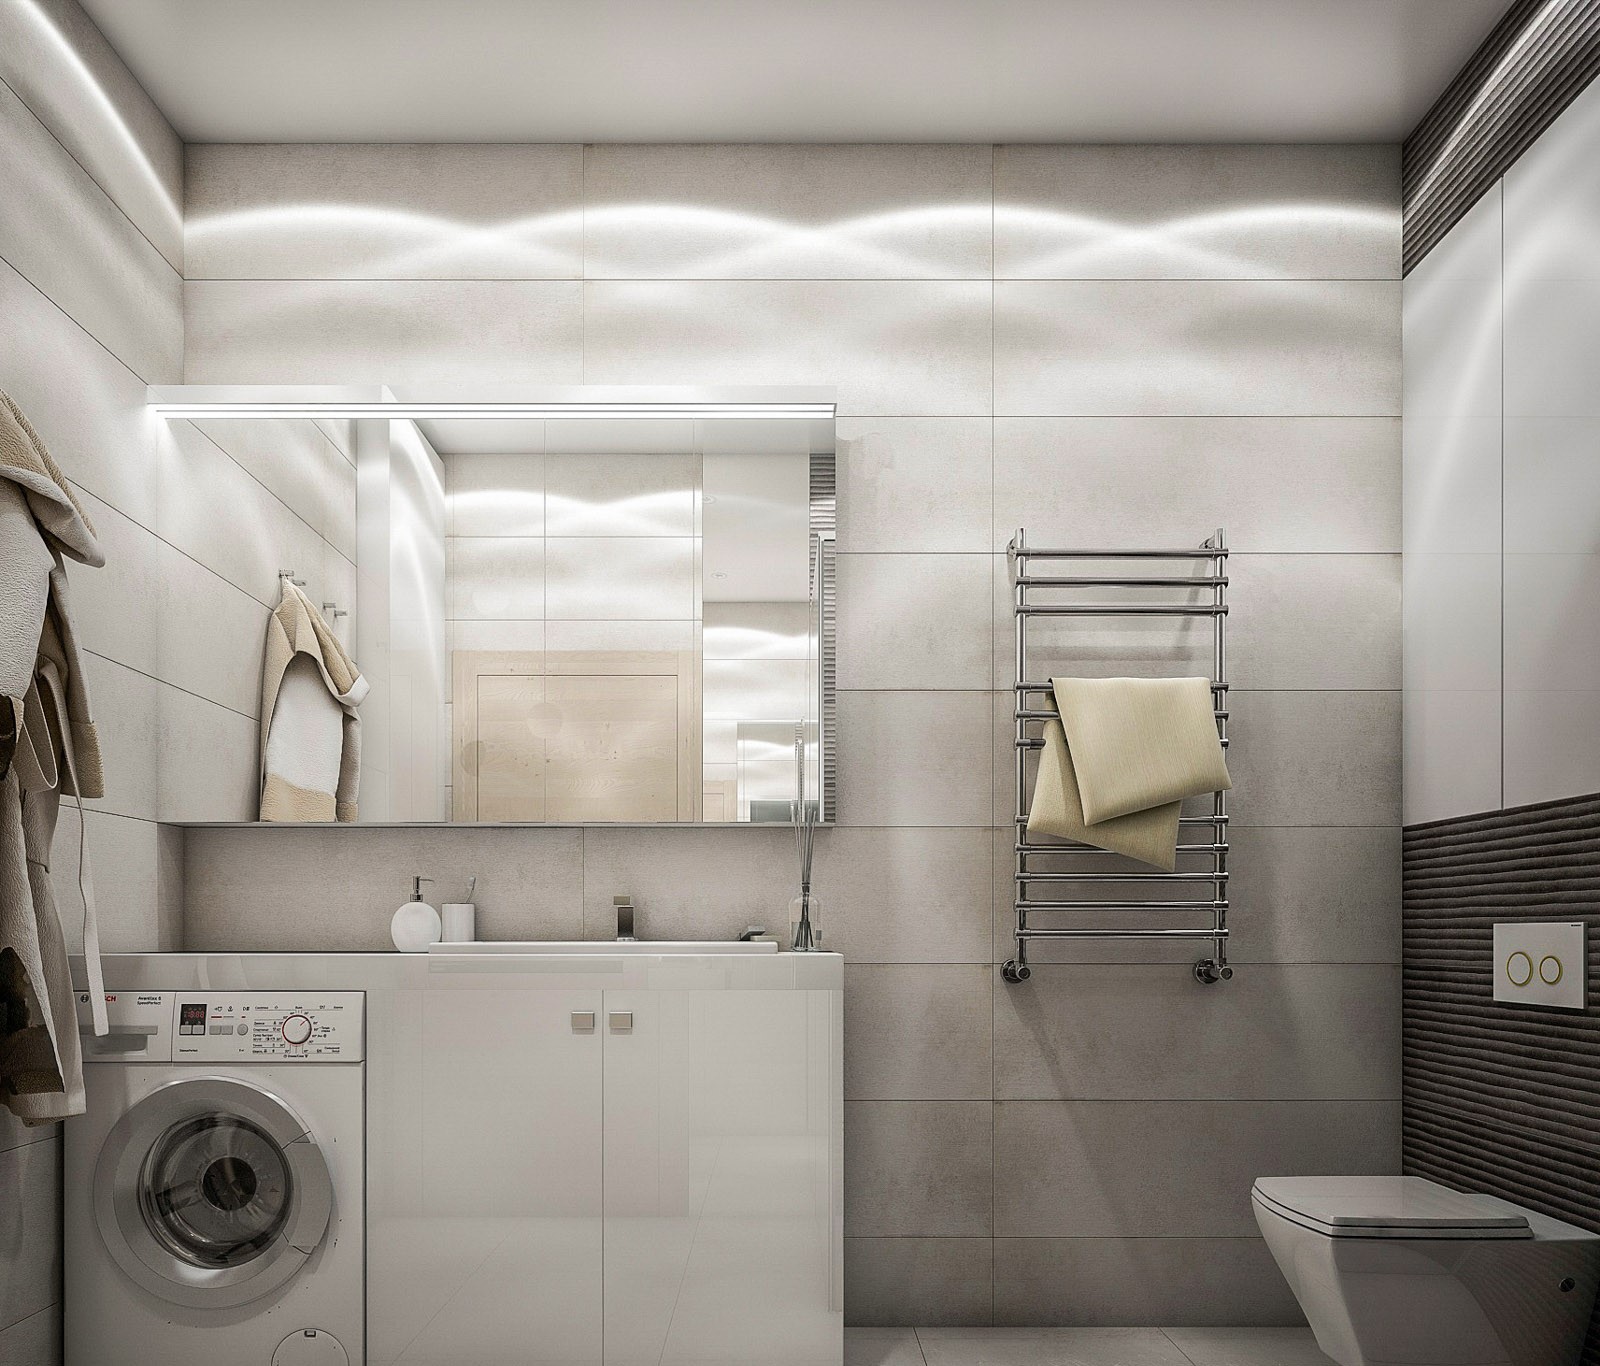 Пример 4) Ремонт ванной комнаты по дизайн проекту по адресу: Москва, улица Солянка, 4с5